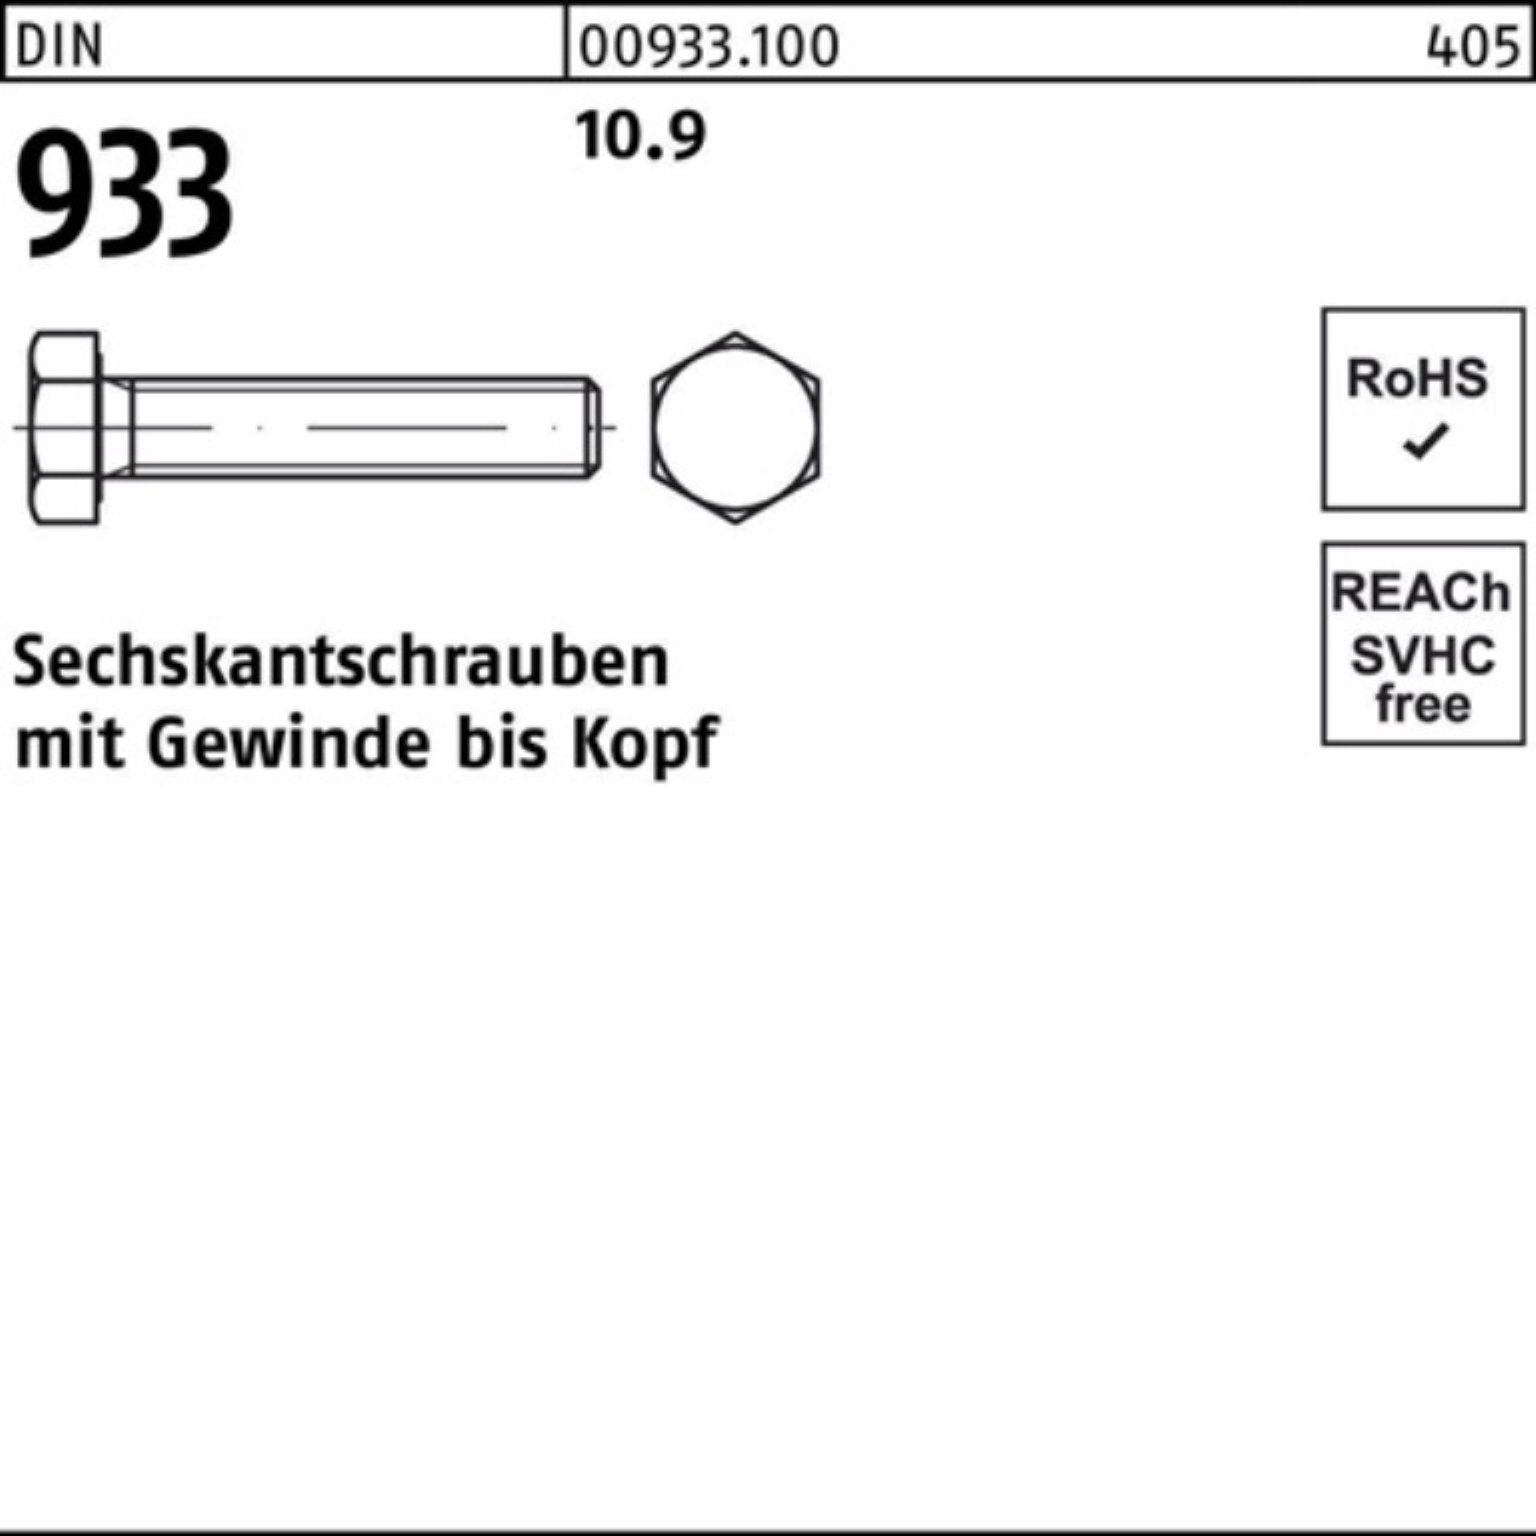 Reyher Sechskantschraube DIN DIN 100er 933 Pack VG M20x Stück Sechskantschraube 170 93 10.9 25